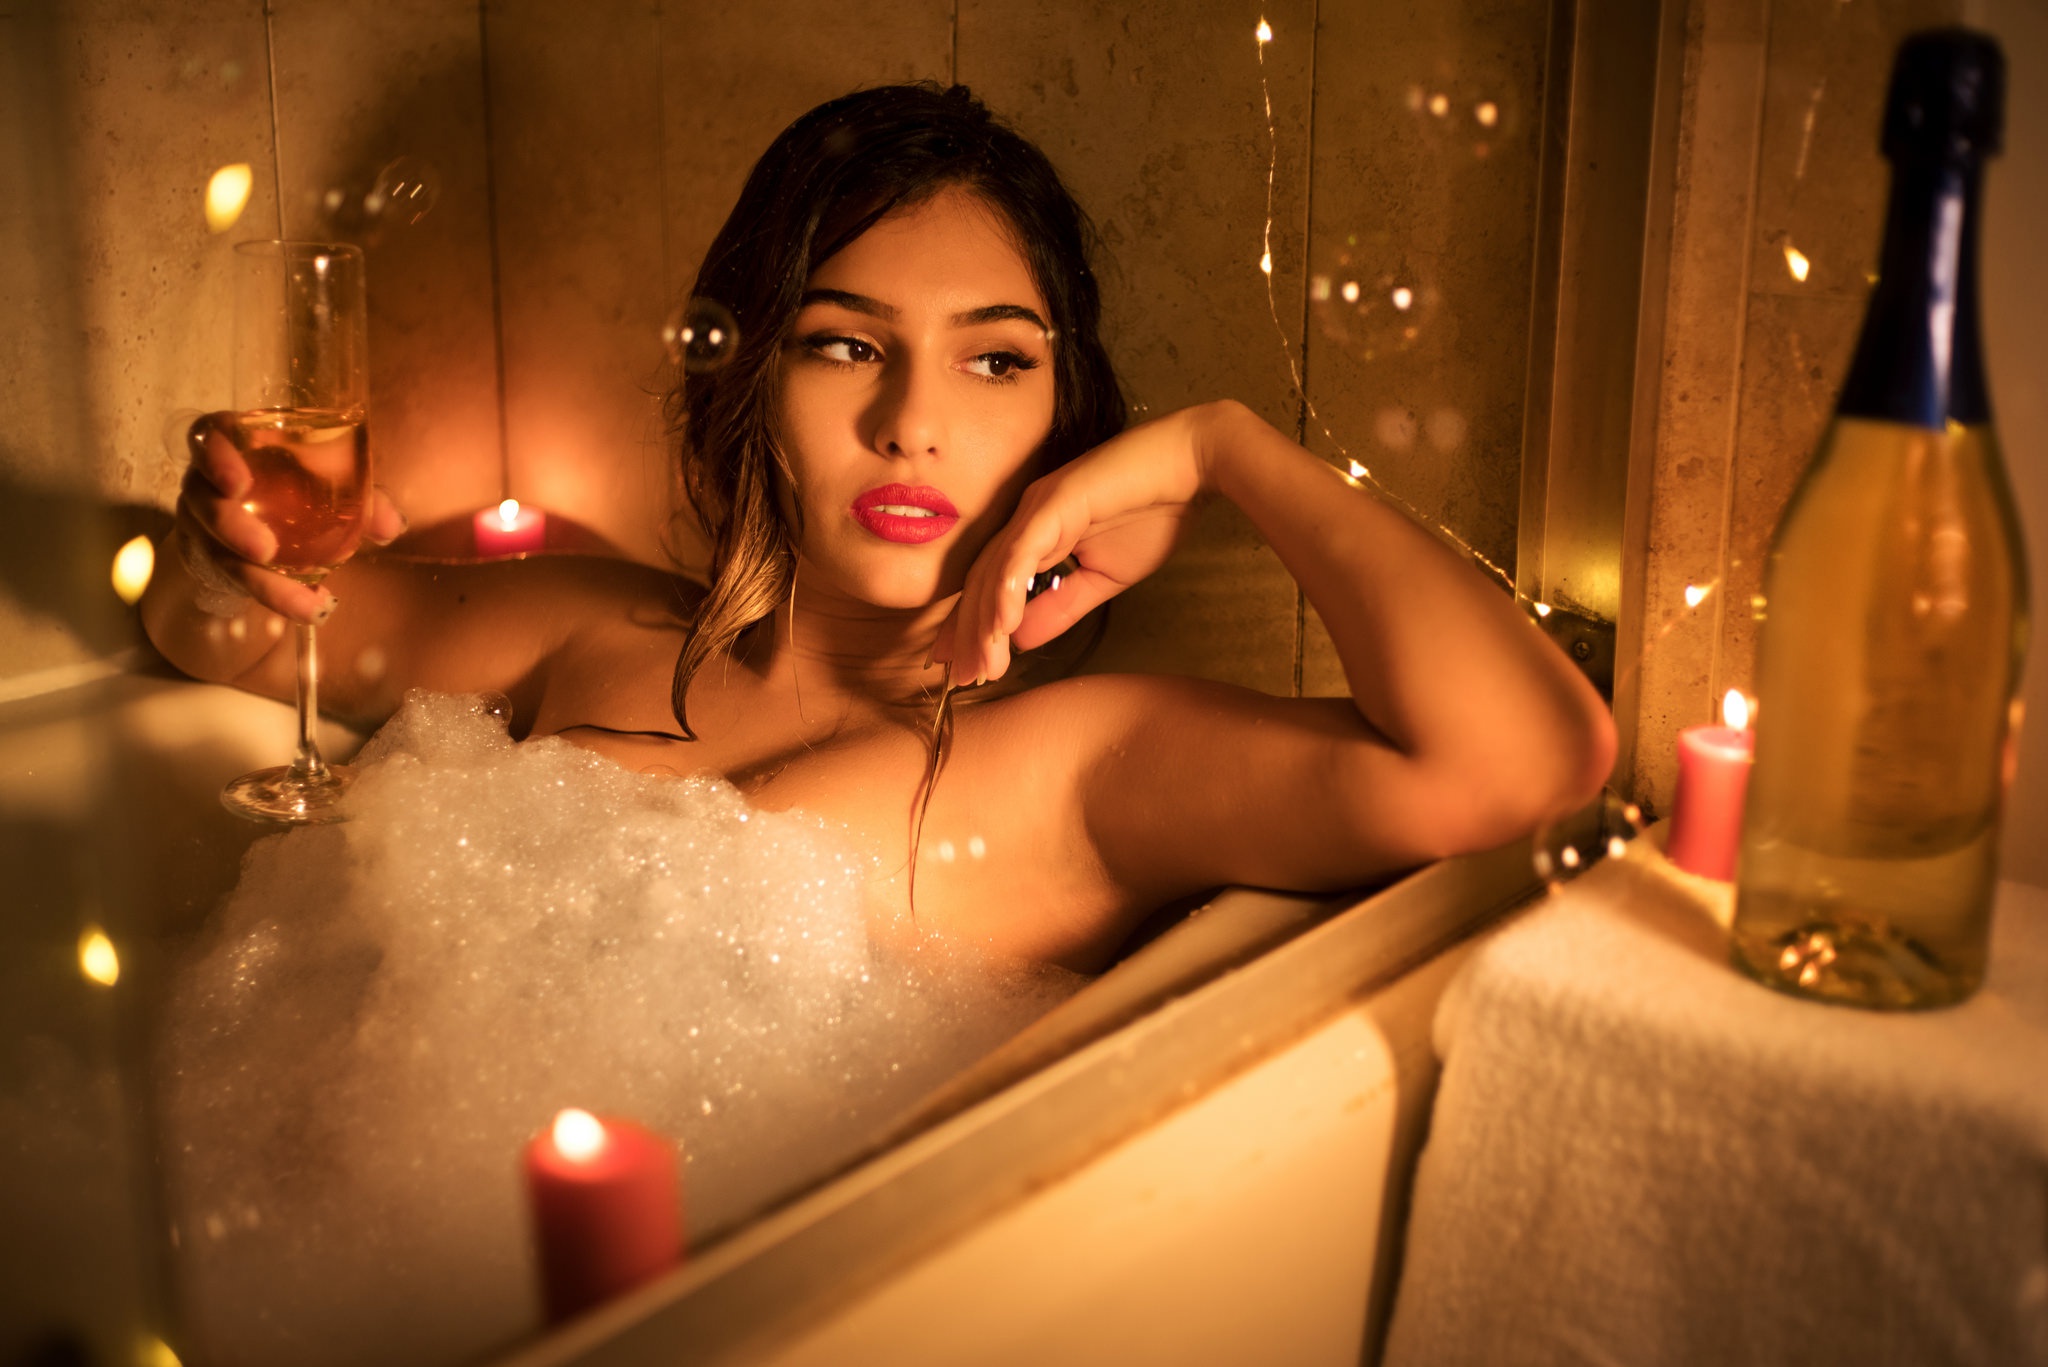 В романтическом видео при свечах девушка устроила любительскую мастурбацию члена